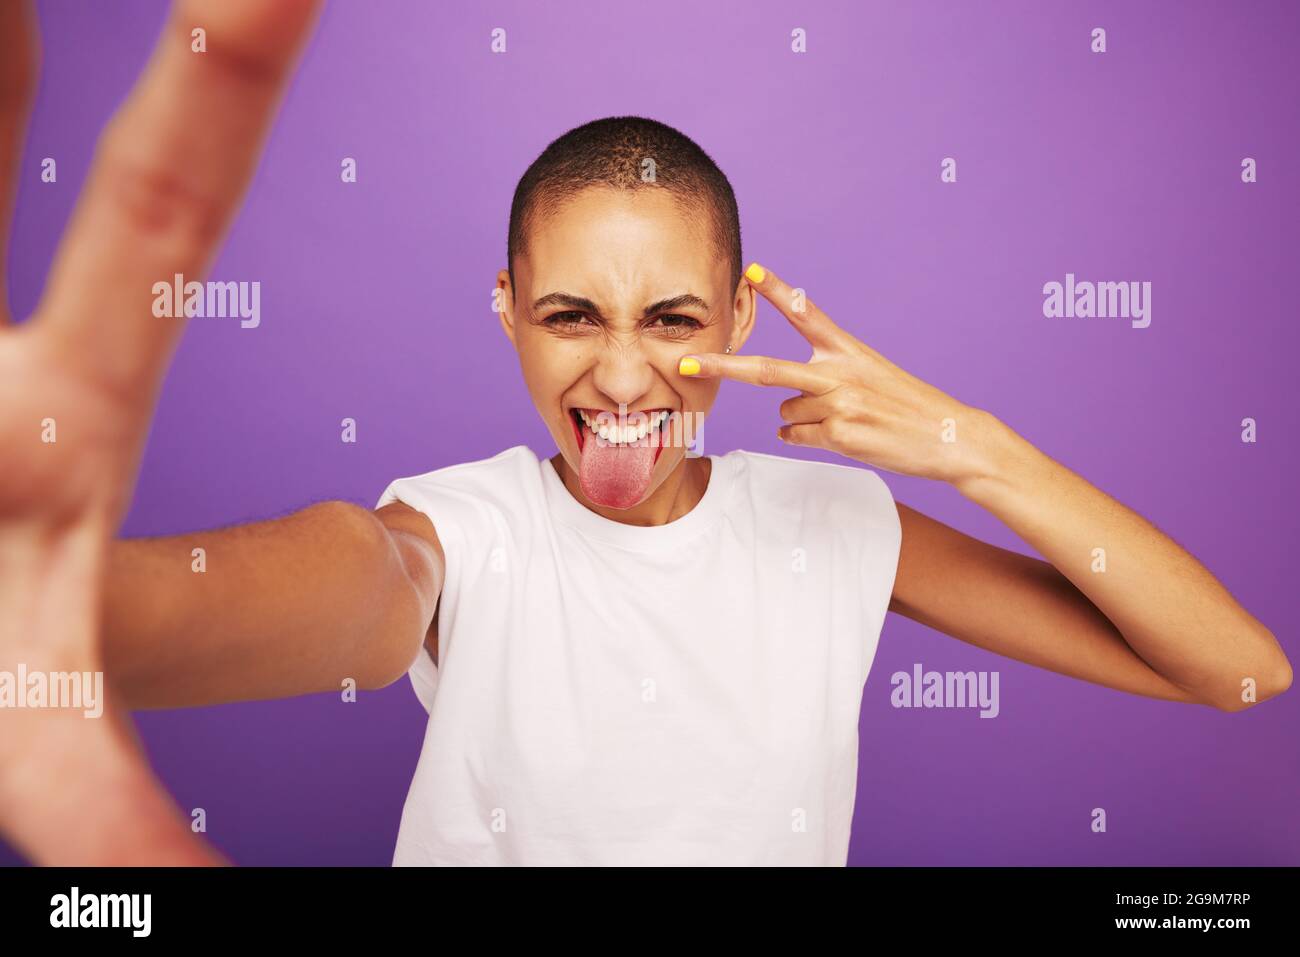 Porträt einer ausdrucksstarken Frau, die auf violettem Hintergrund posiert. Rasierte Kopffrau, die ihre Zunge herausstreckt und ein Zeichen der Friedenshand zeigt. Stockfoto